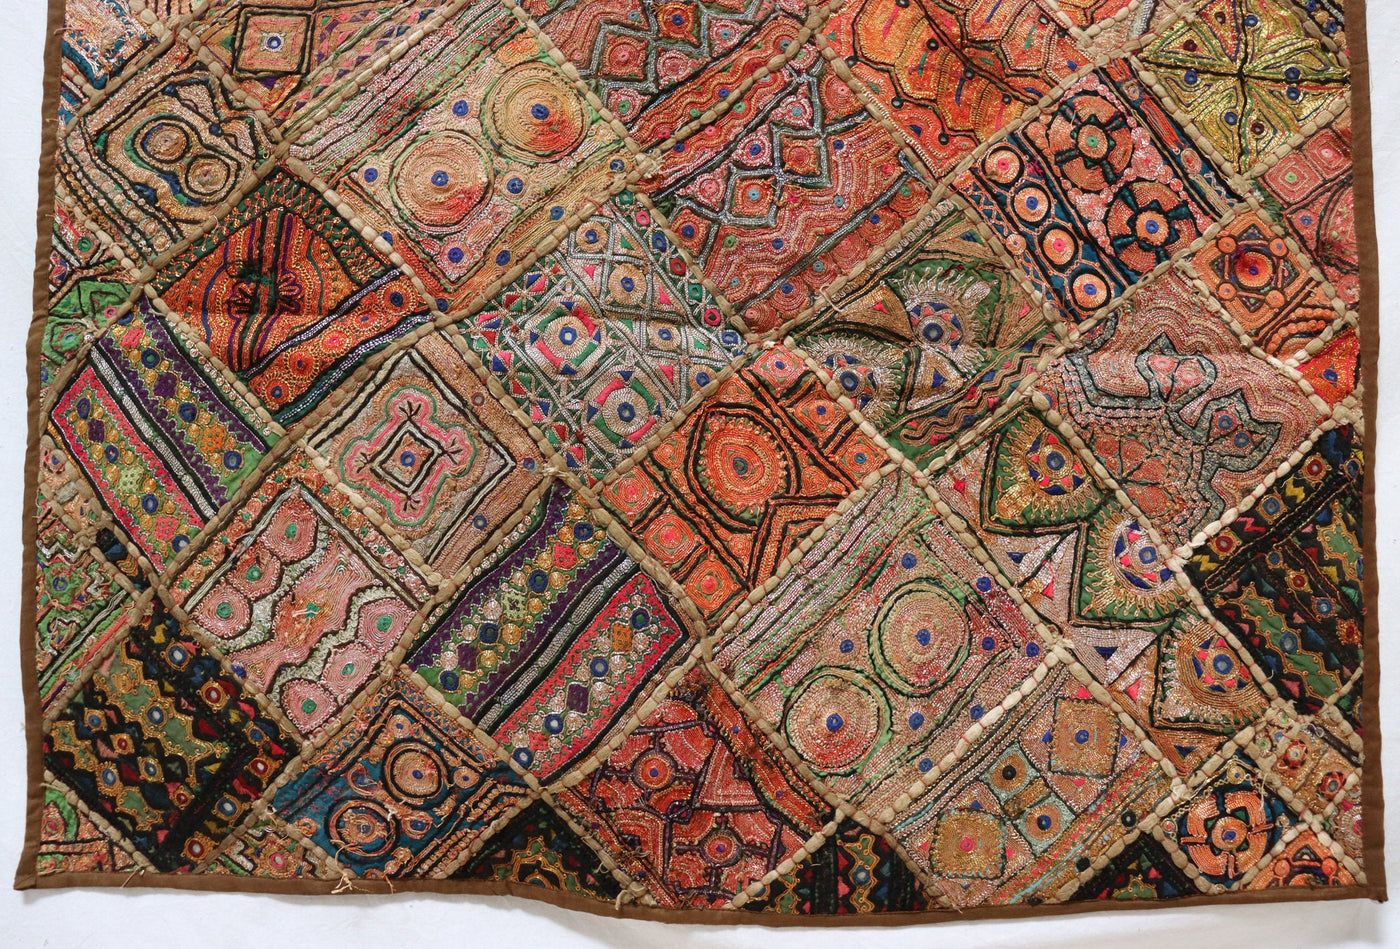 175x98 cm Vintage Bohemian orientalische Patchwork Wandbehang Wandteppich Teppich  Nr:22/22 Wandbehang Orientsbazar   